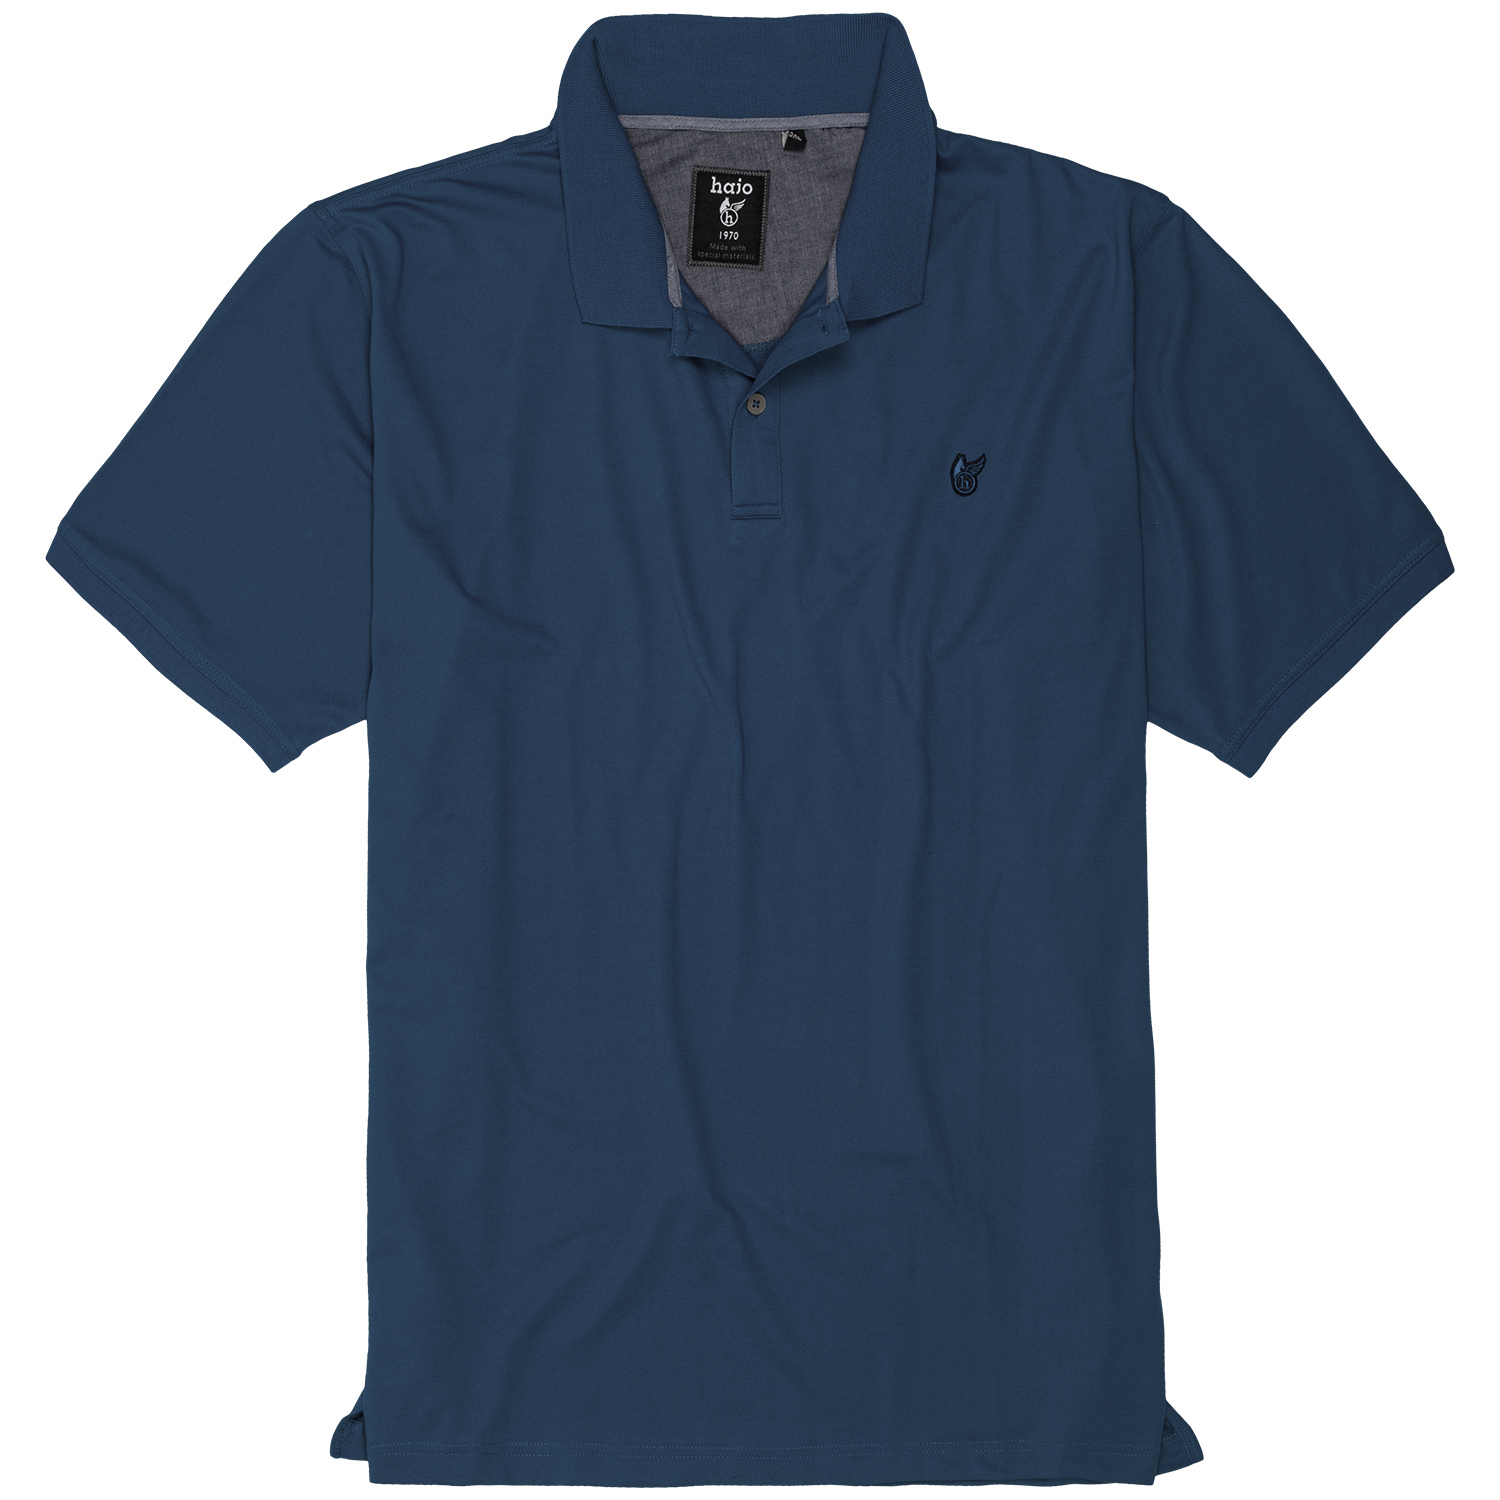 Admiralblaues Kurzarm Polo Shirt von Hajo in großen Größen bis 6XL - in "Stay Fresh" Qualität